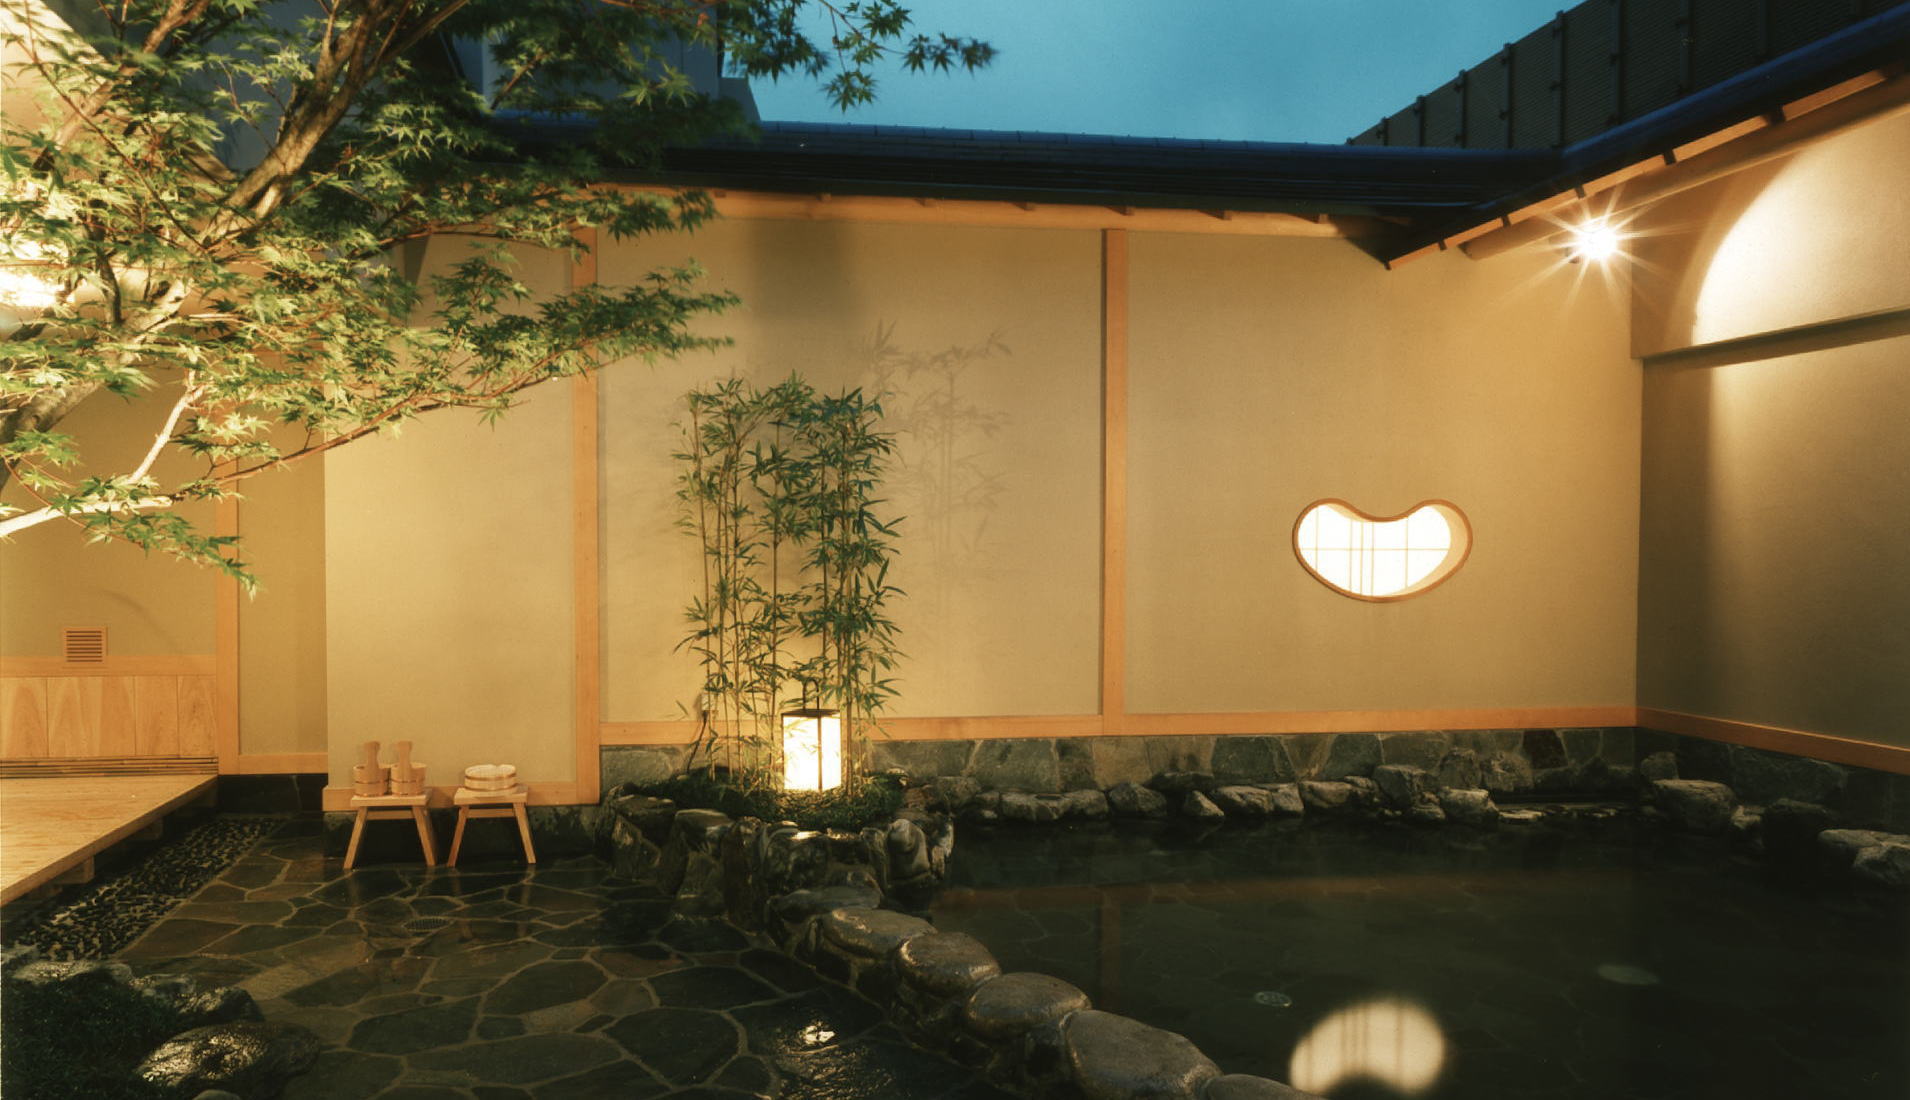 京都旅館 湯の宿 松栄は京都市内の旅館で随一の浴場施設